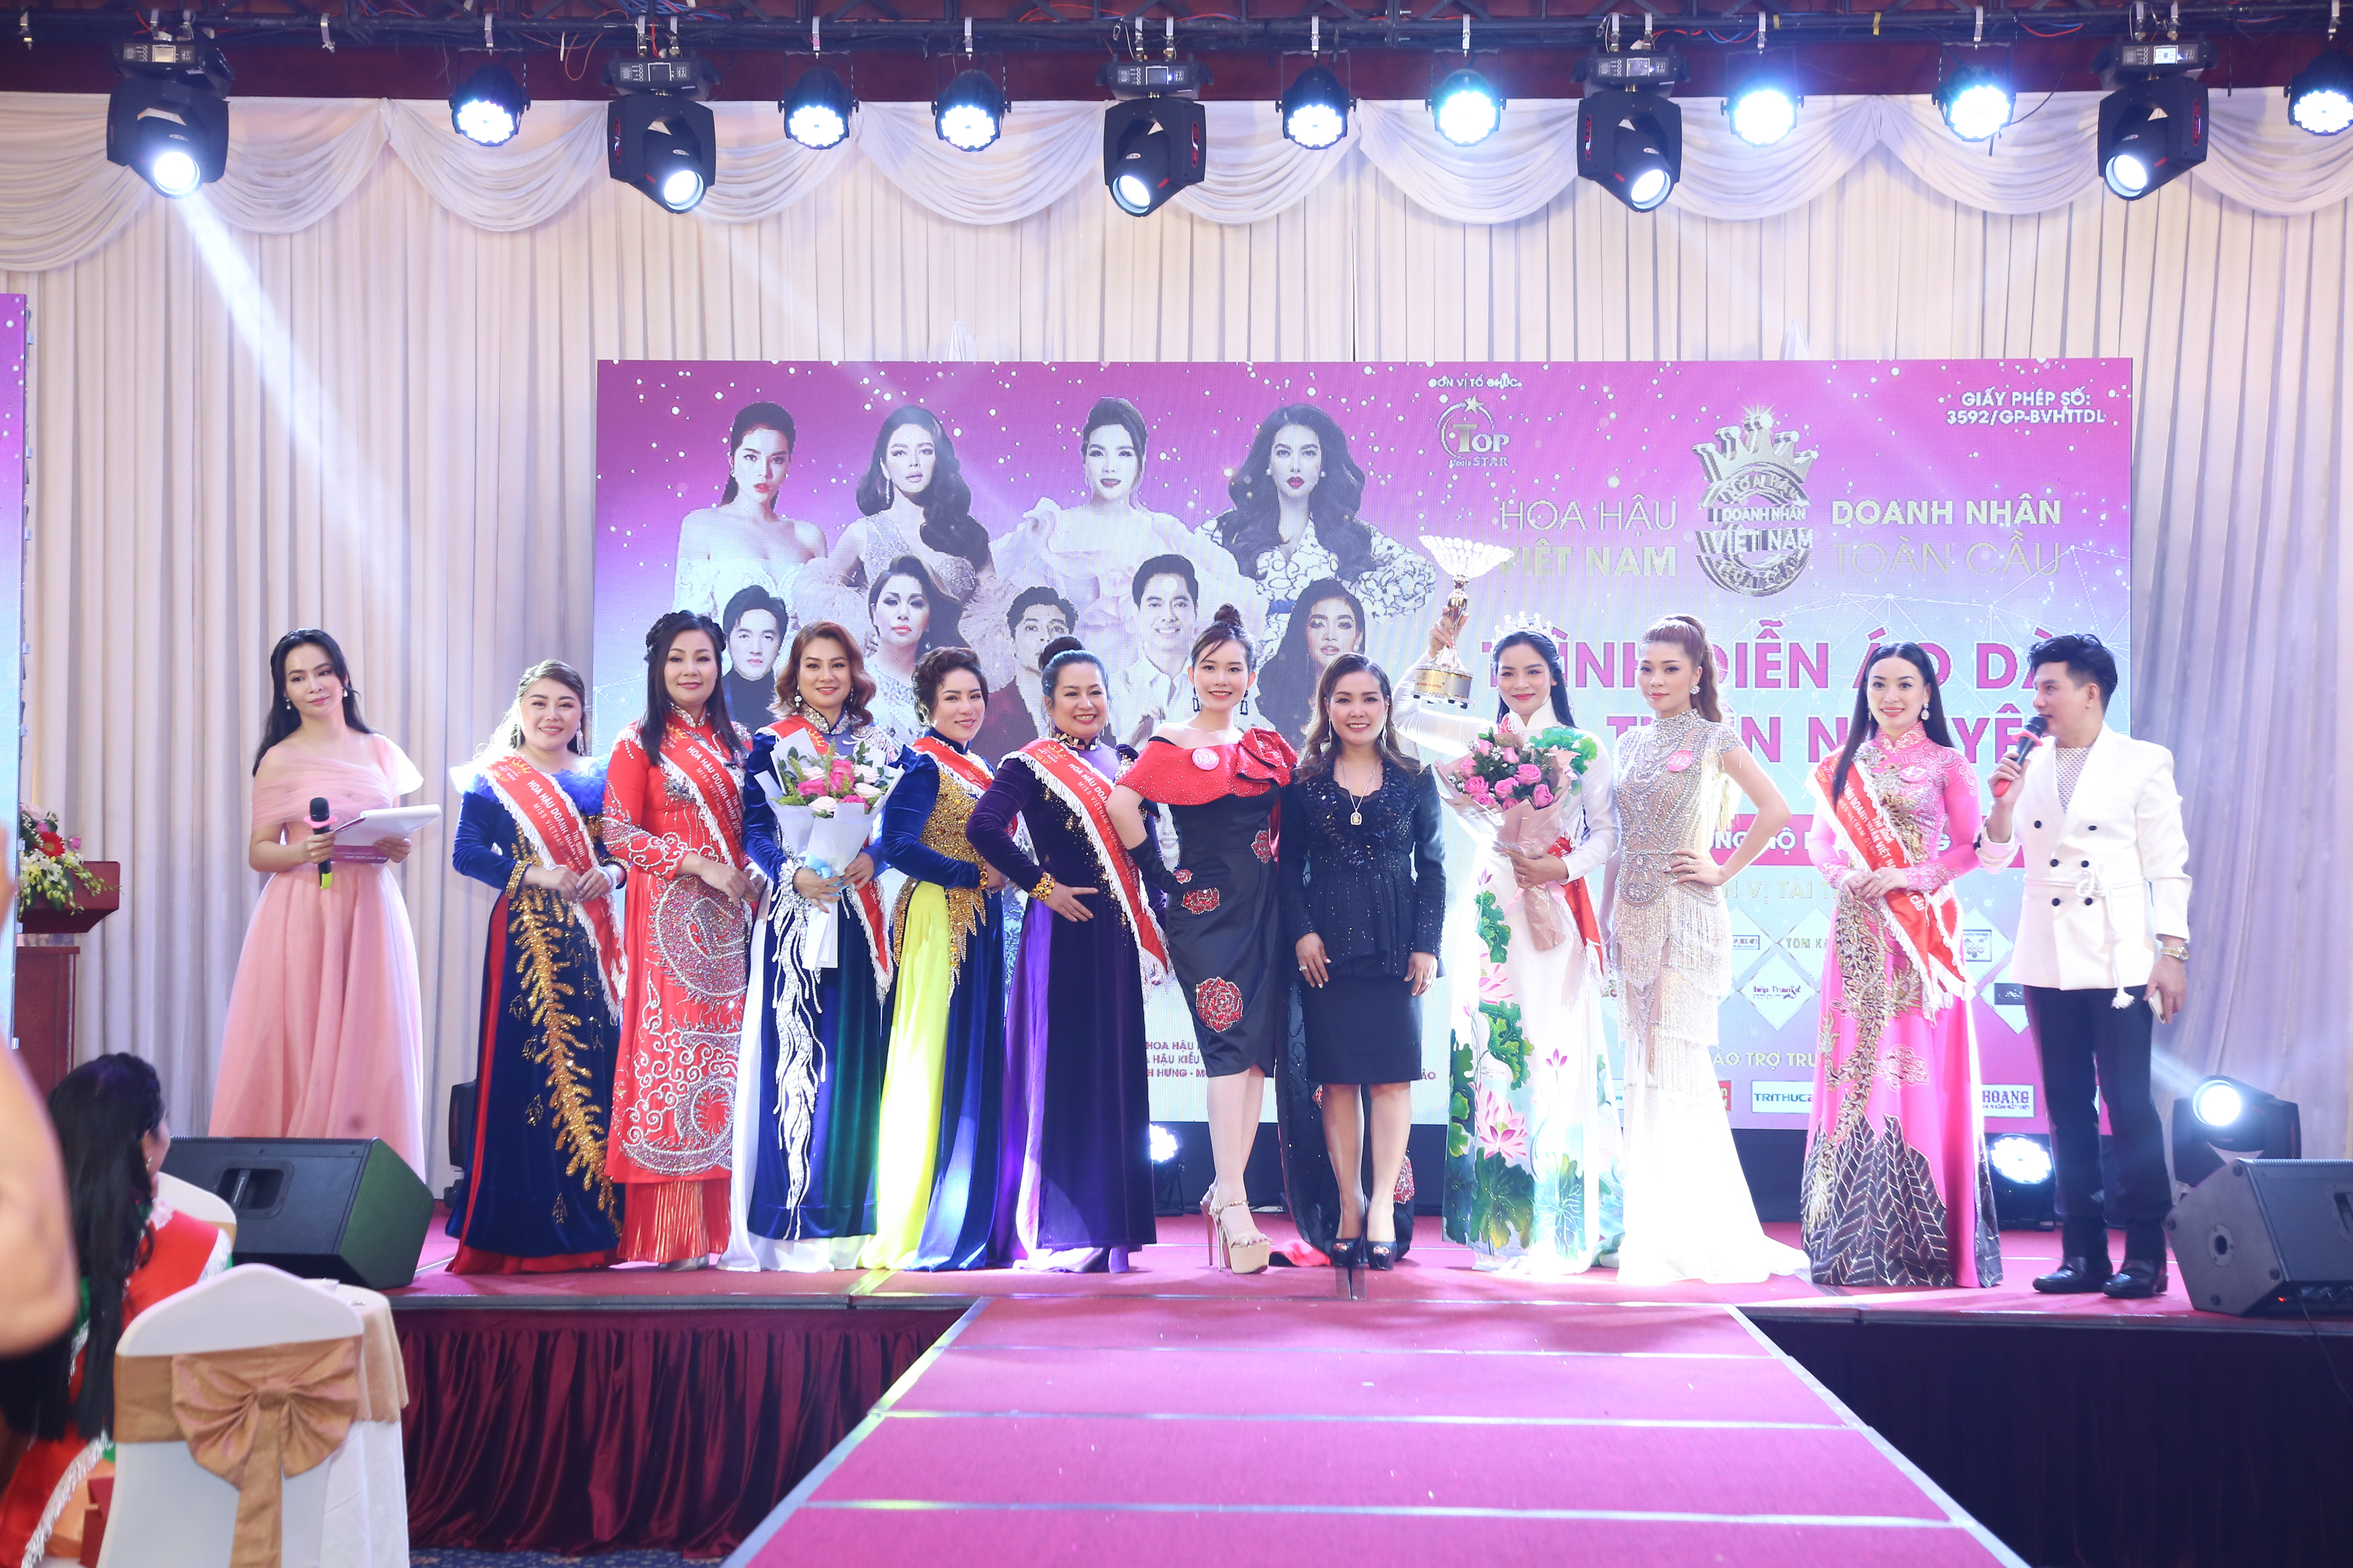 Nhiều cảm xúc trong đêm đấu giá gây quỹ của Hoa hậu Doanh nhân Việt Nam Toàn cầu 2020